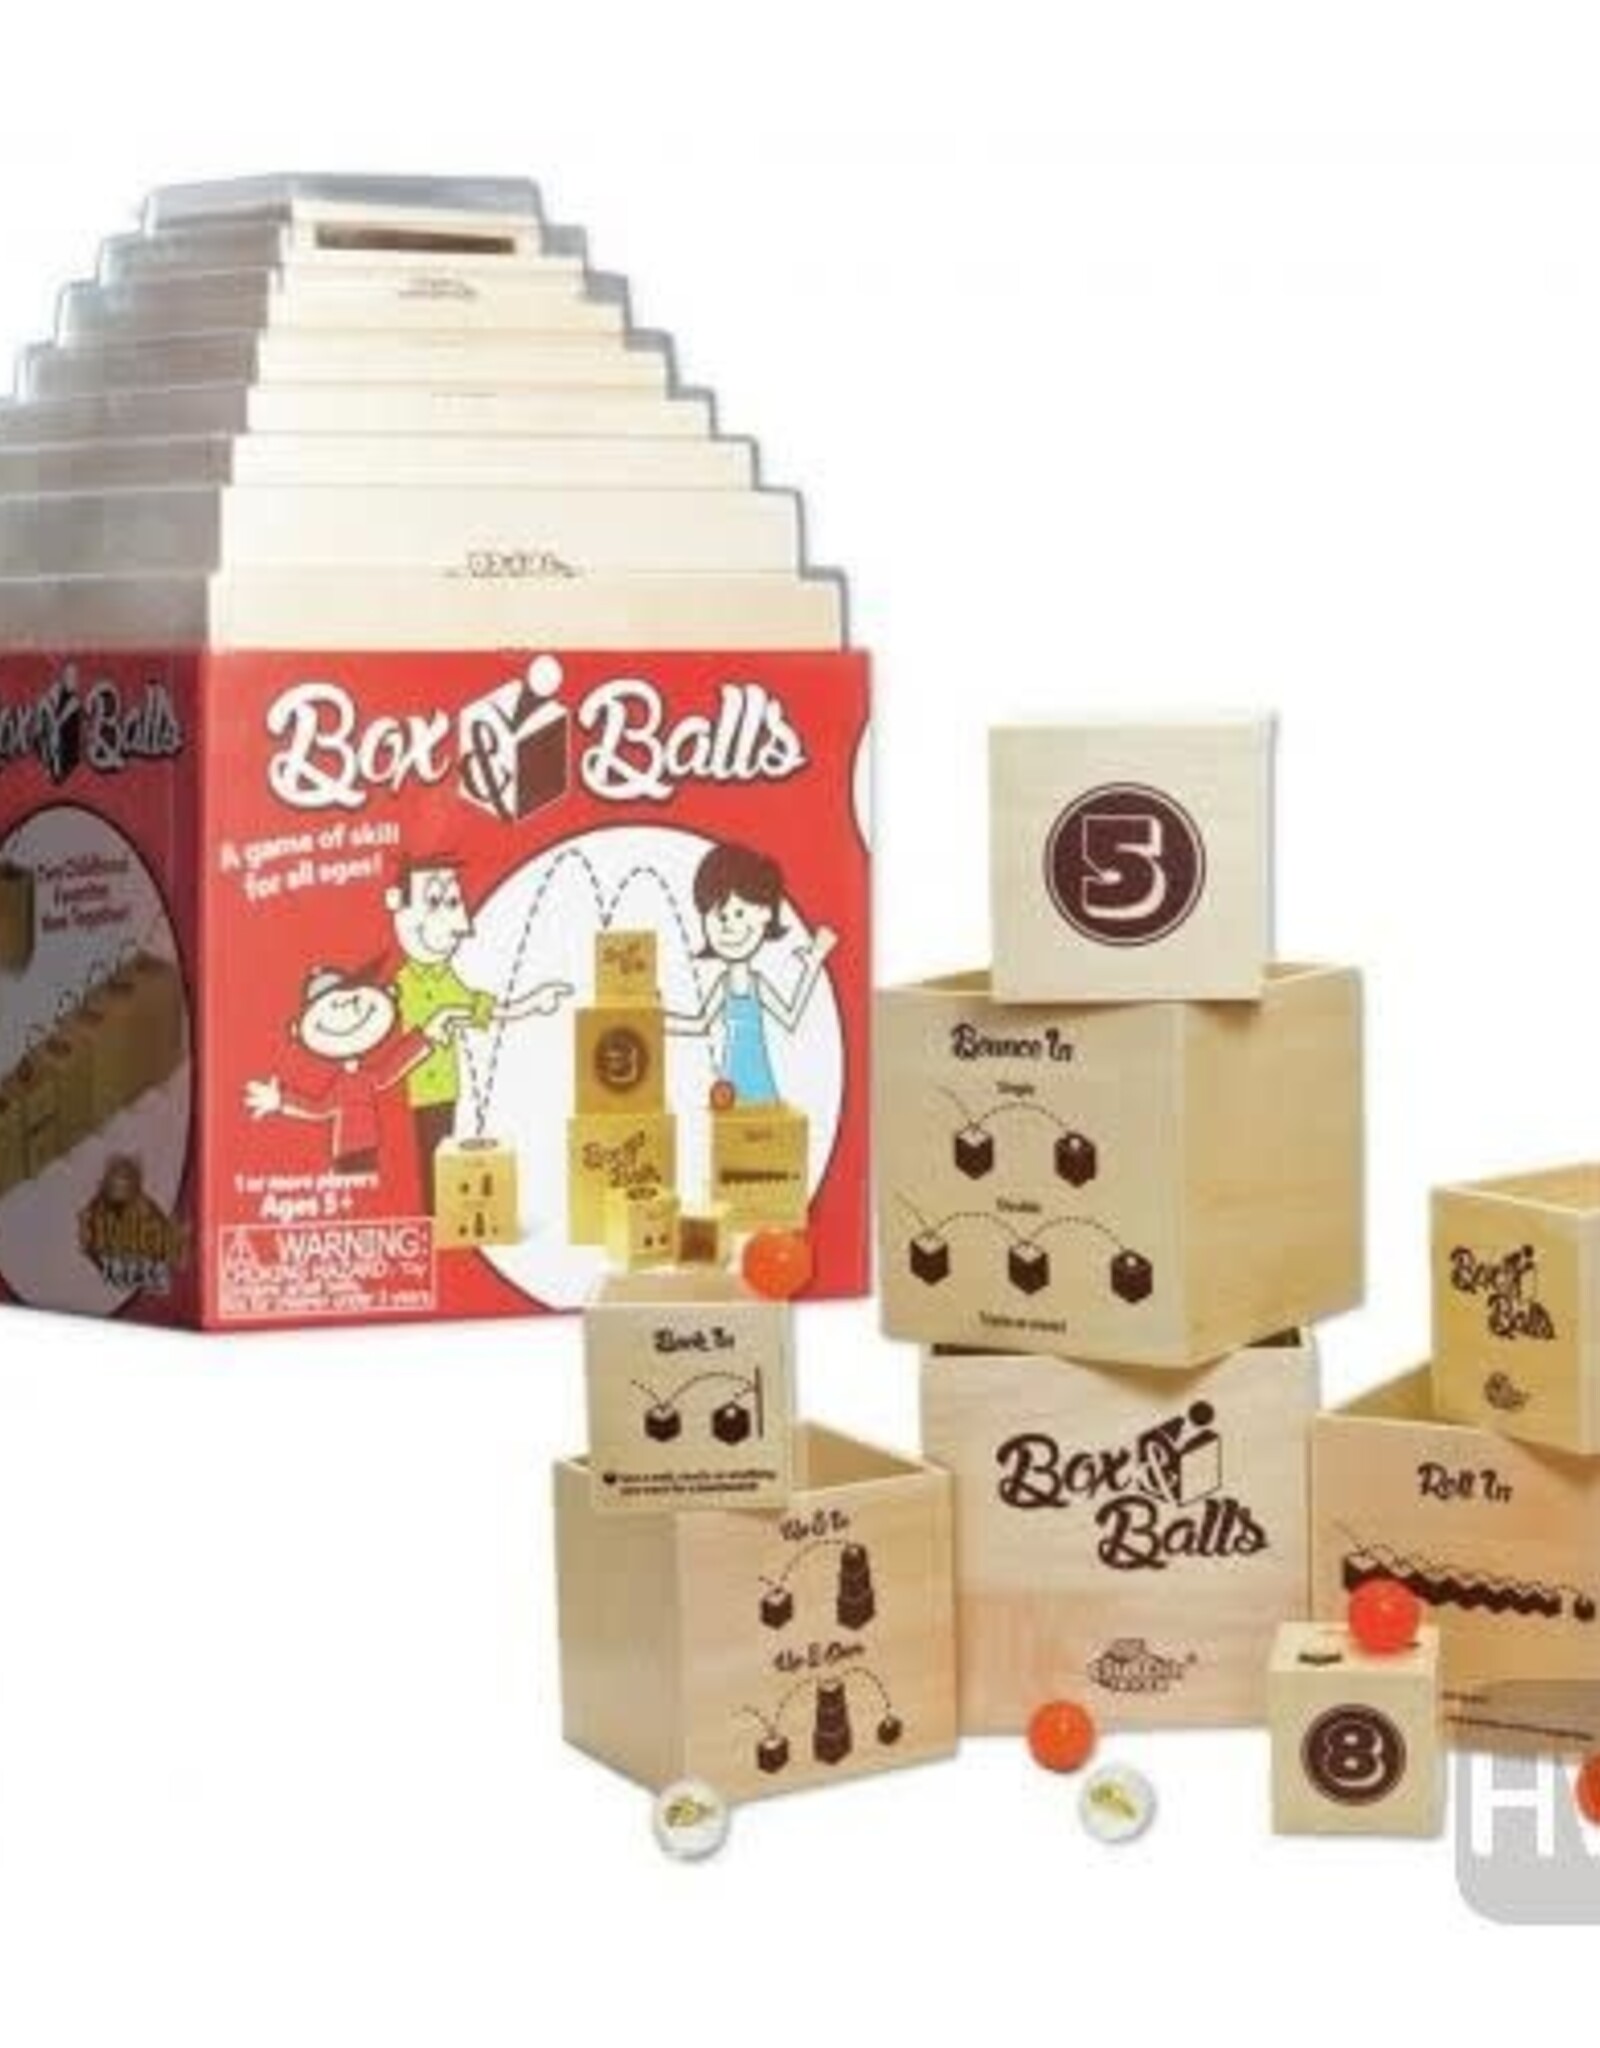 FAT BRAIN BOX & BALLS